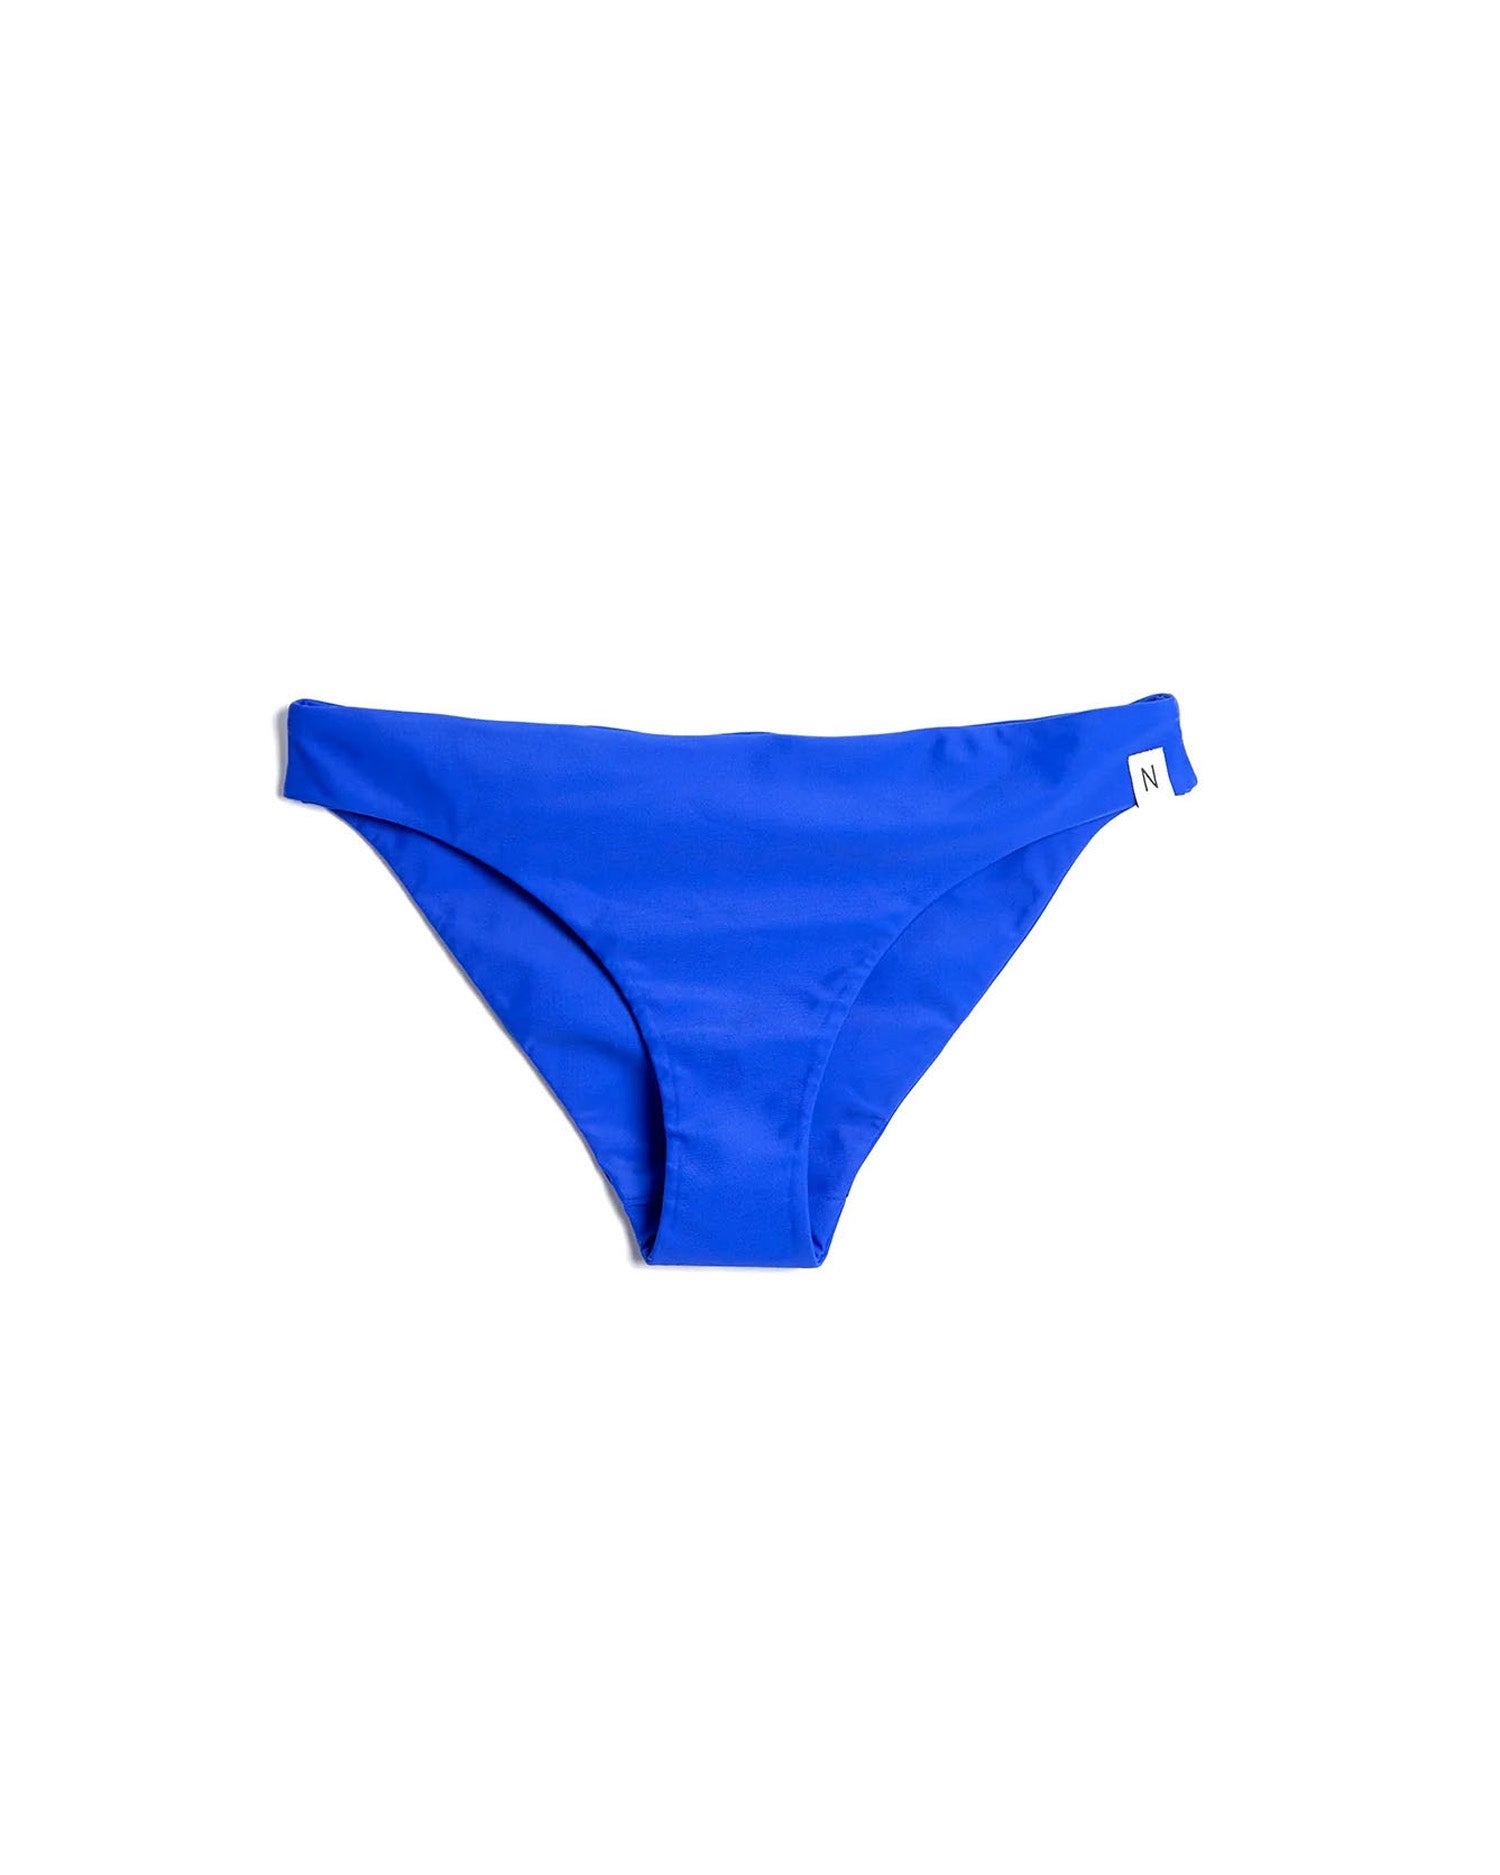 Net-Bikini - Biasca - Cobalt Blue - BOTTOM